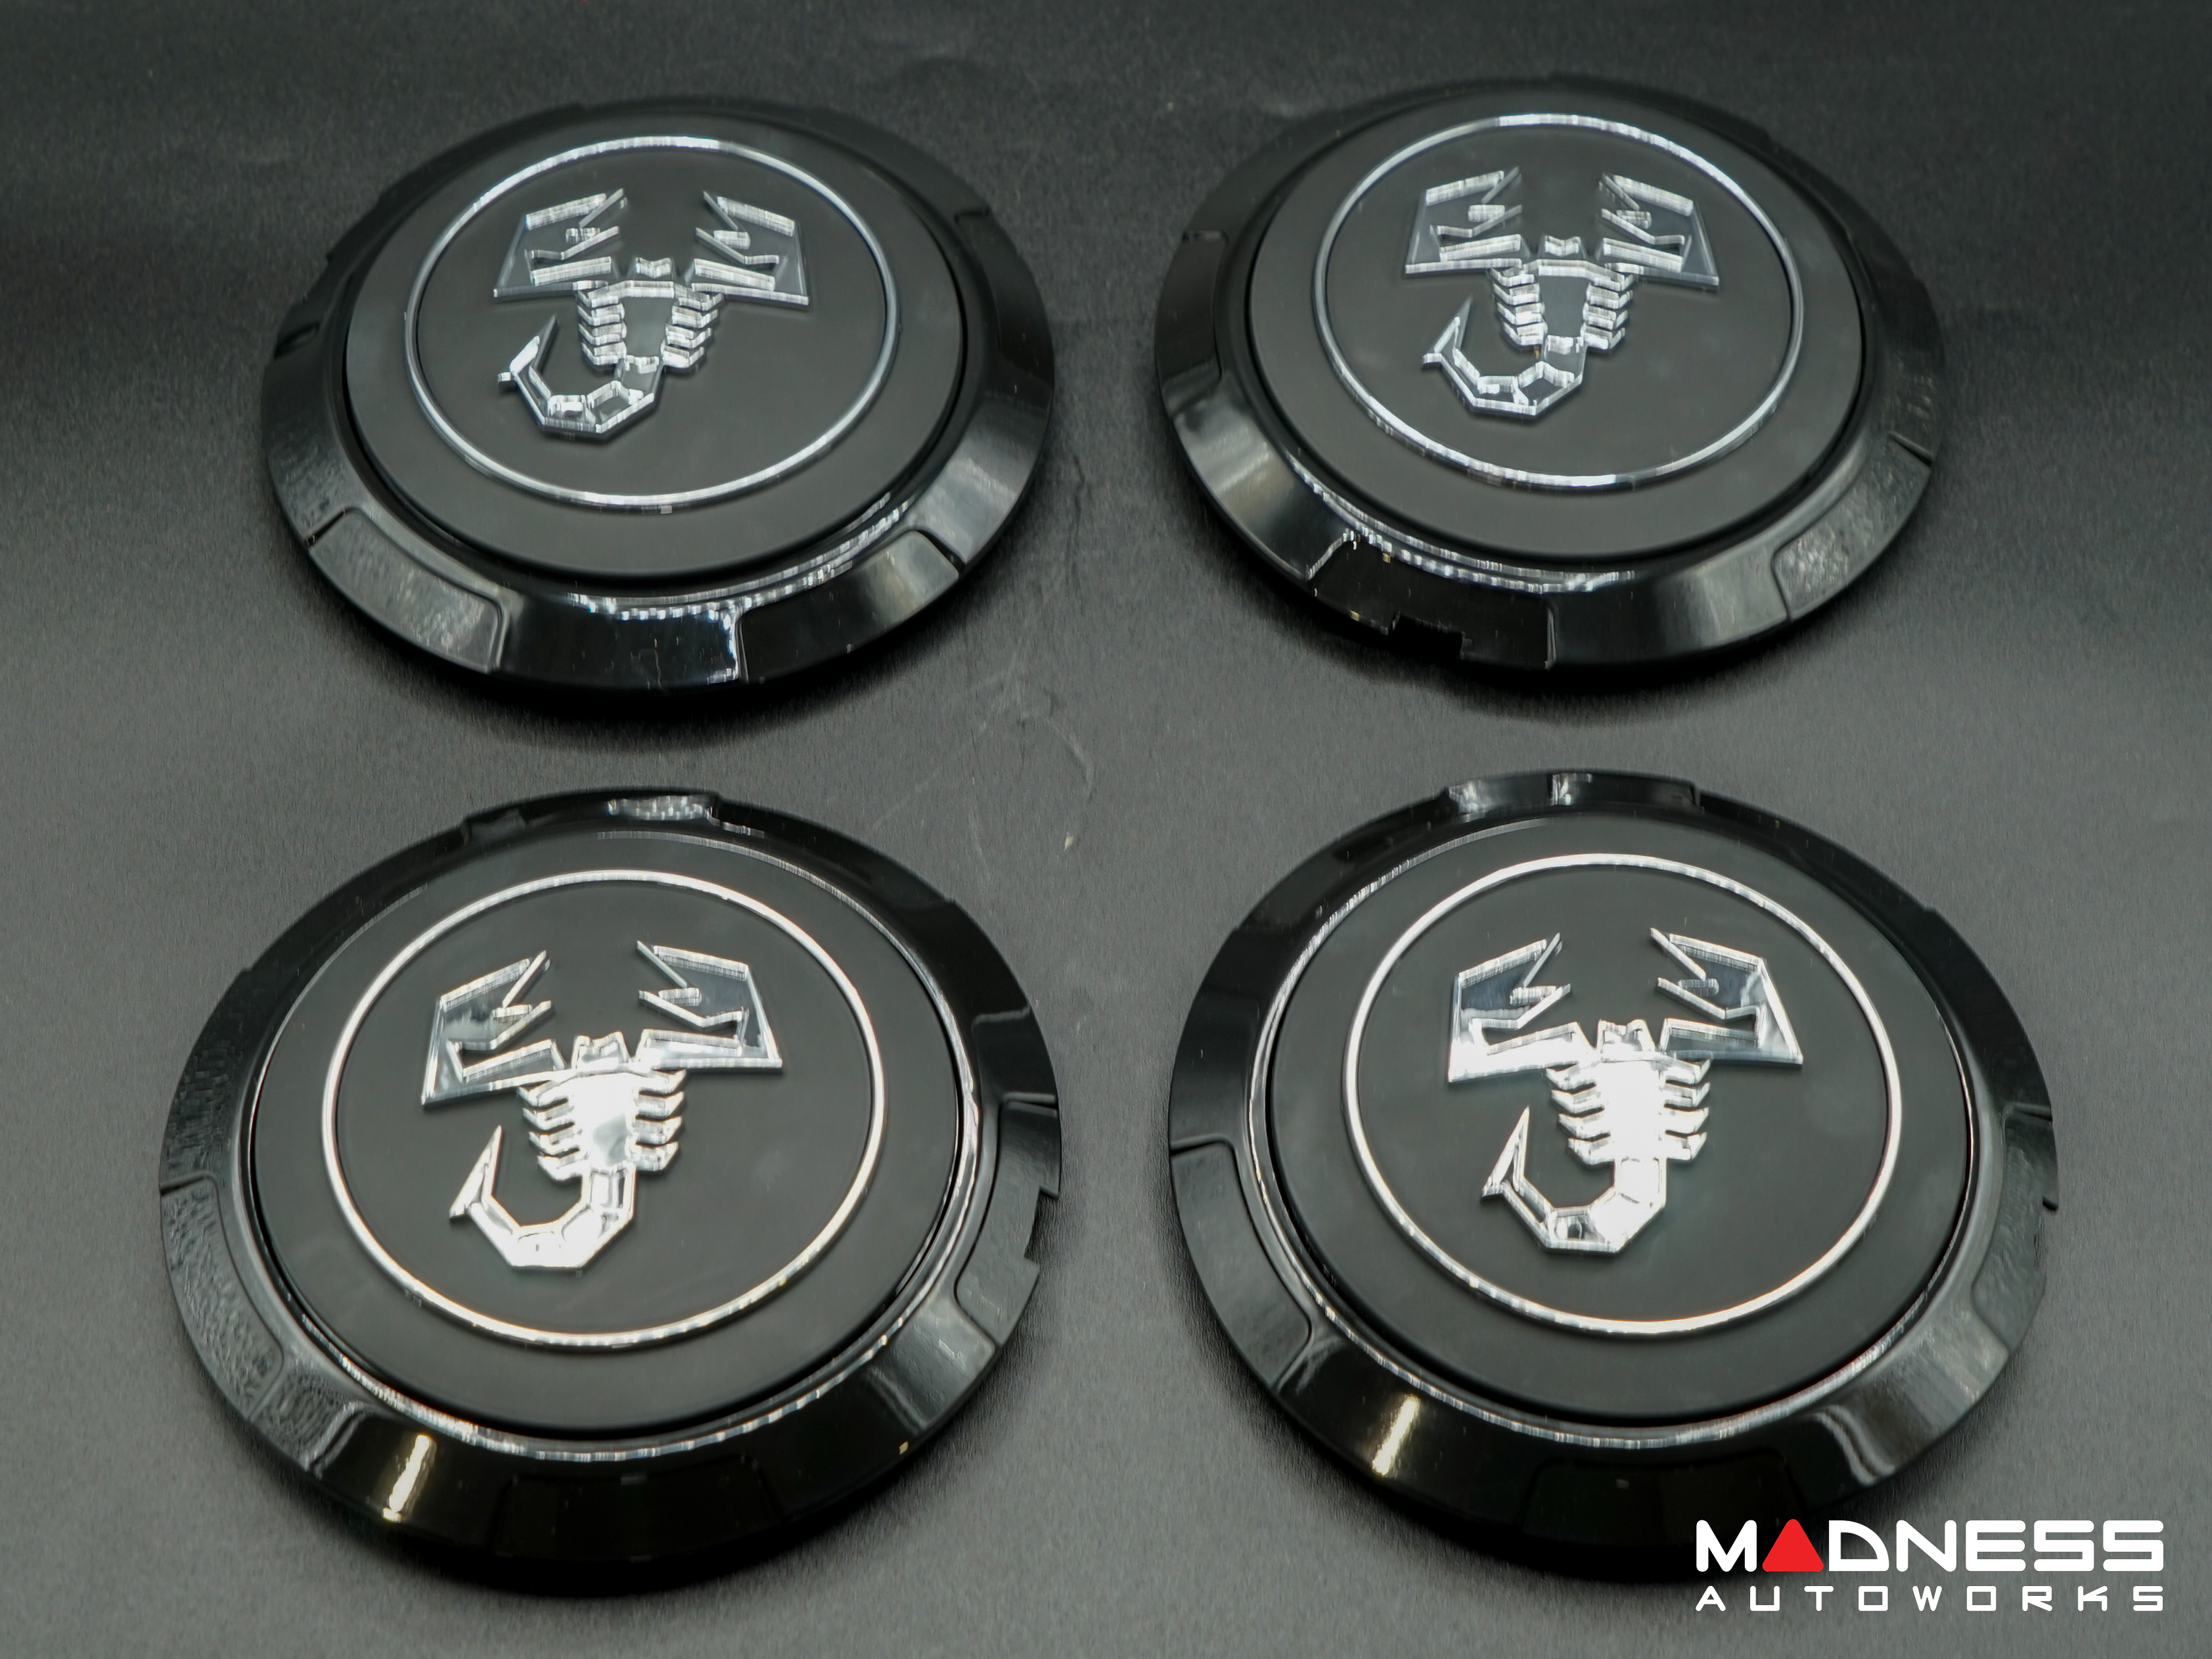 FIAT 500 Wheel Center Cap Set - set of 4 - Black - Scorpion Design